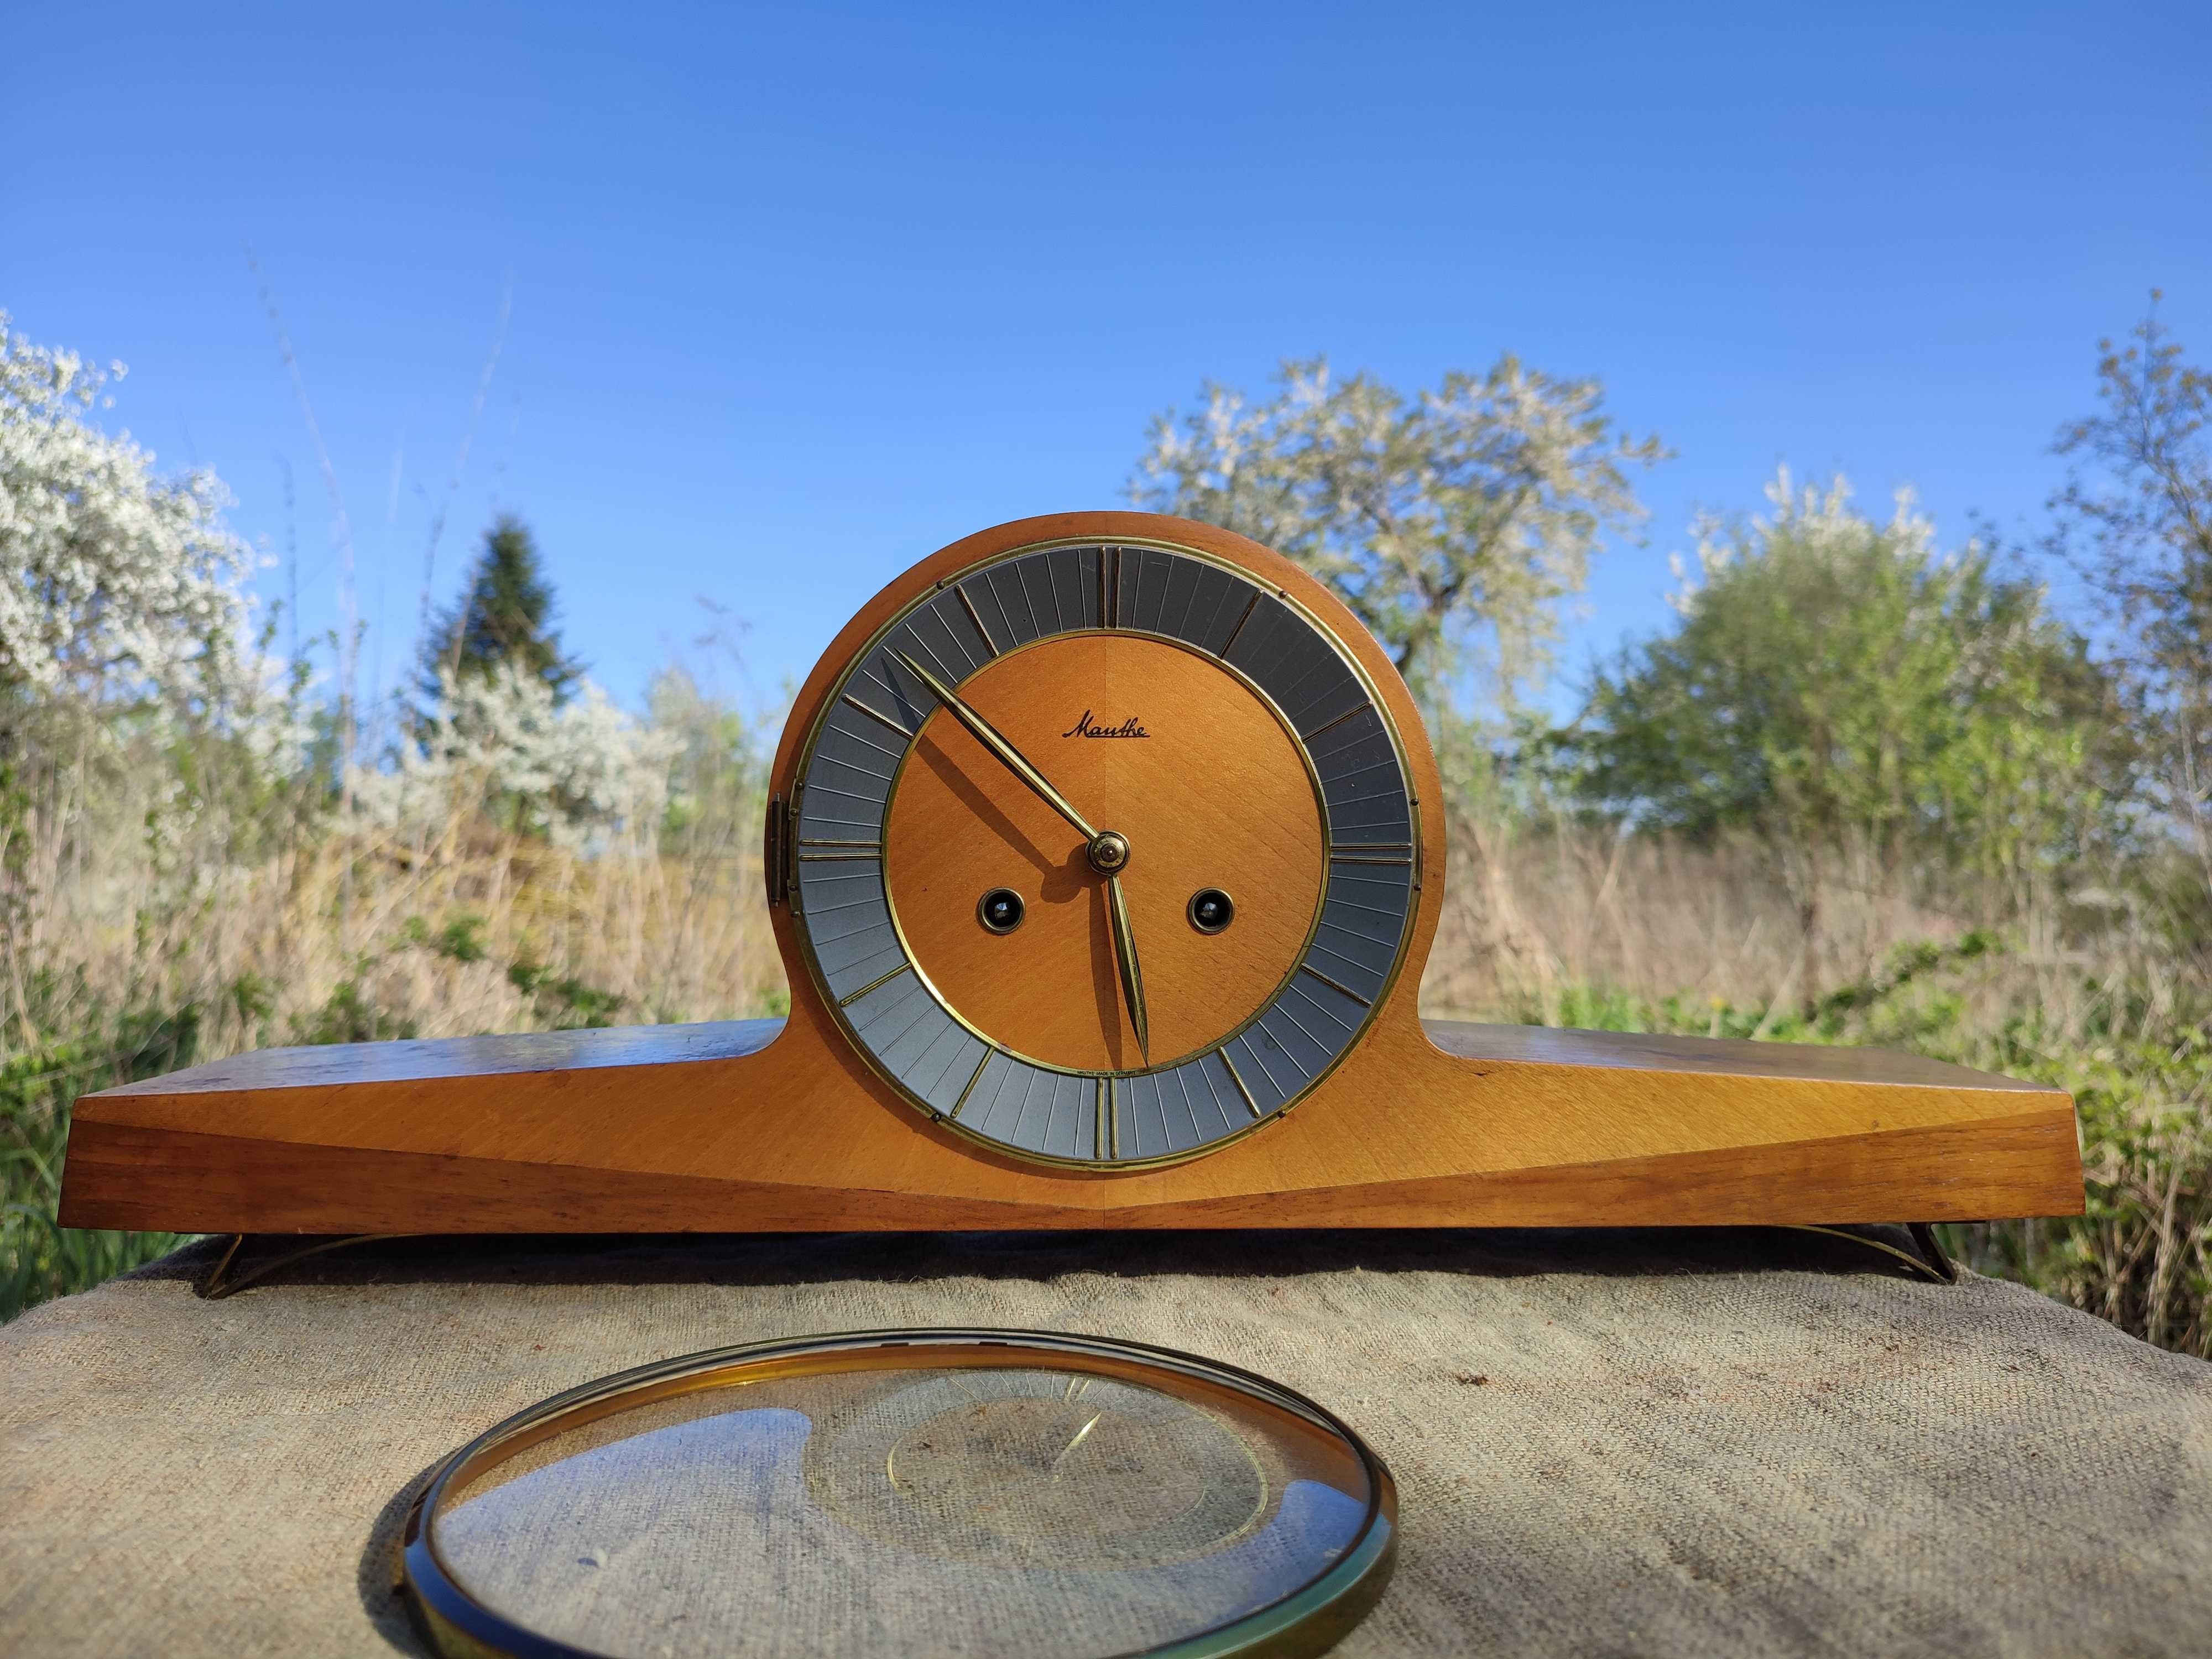 Zegar kominkowy  Mauthe w stylu mid century